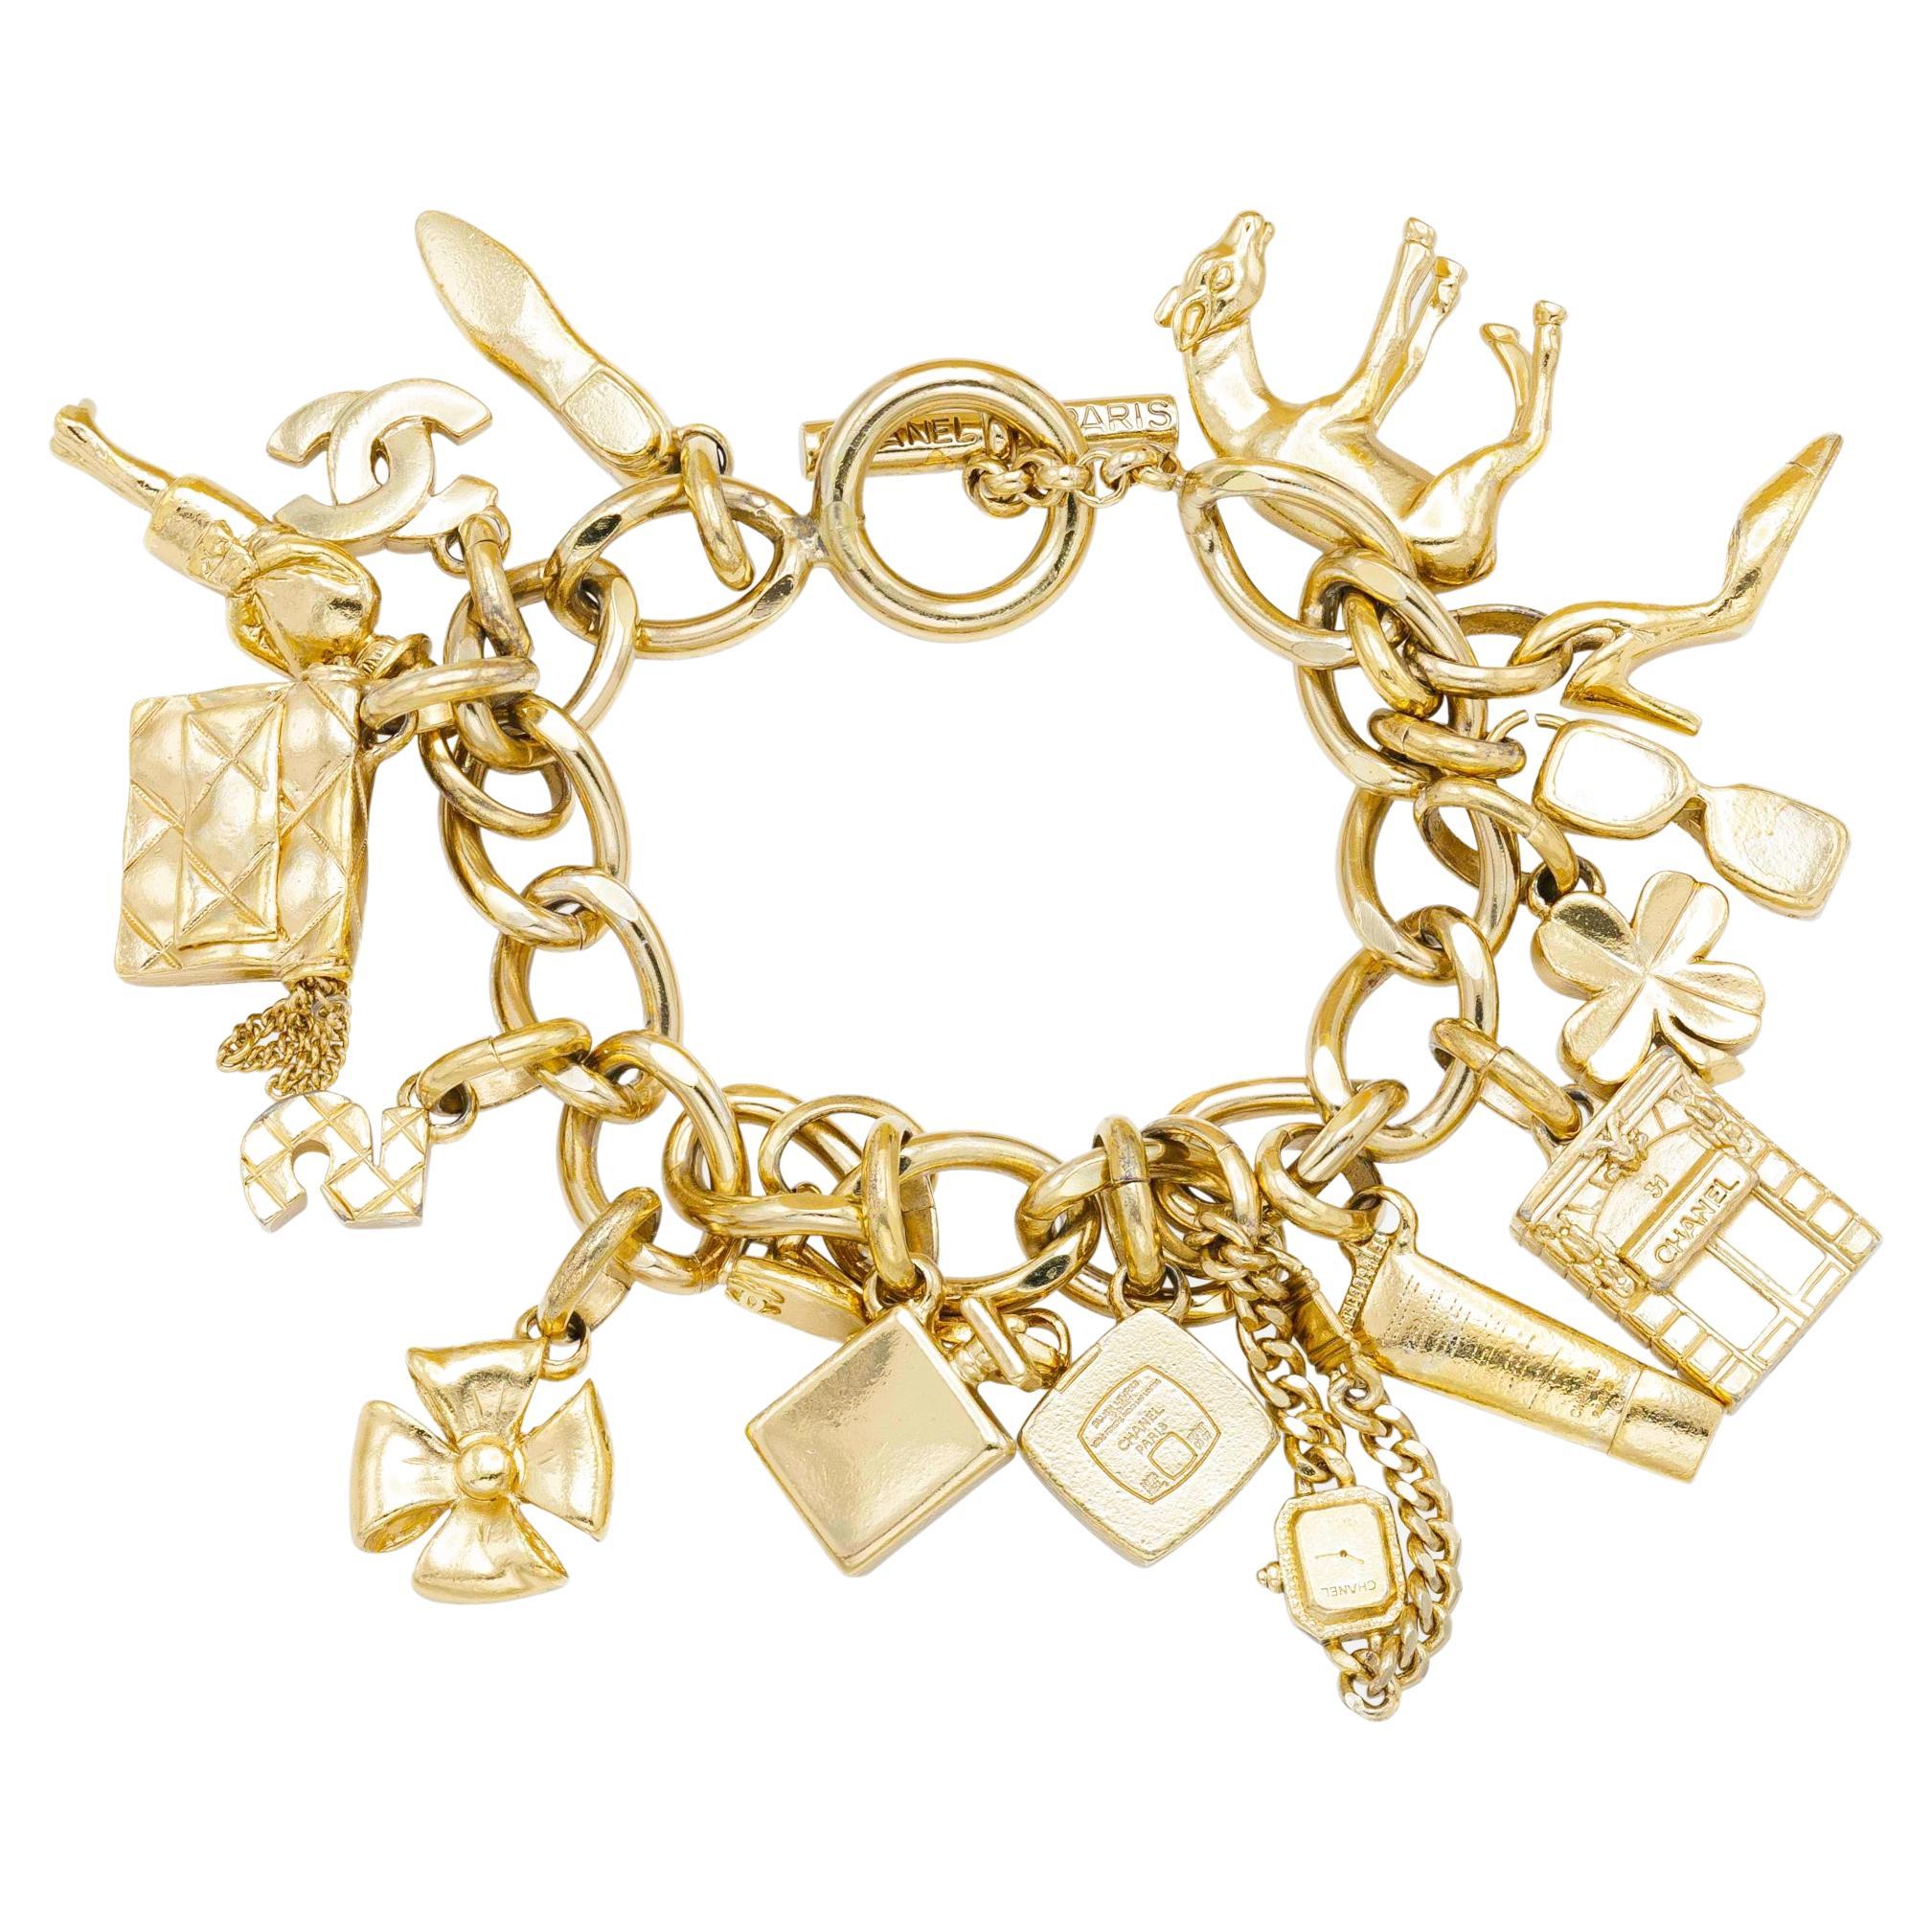 Chanel Vintage Charm Bracelet